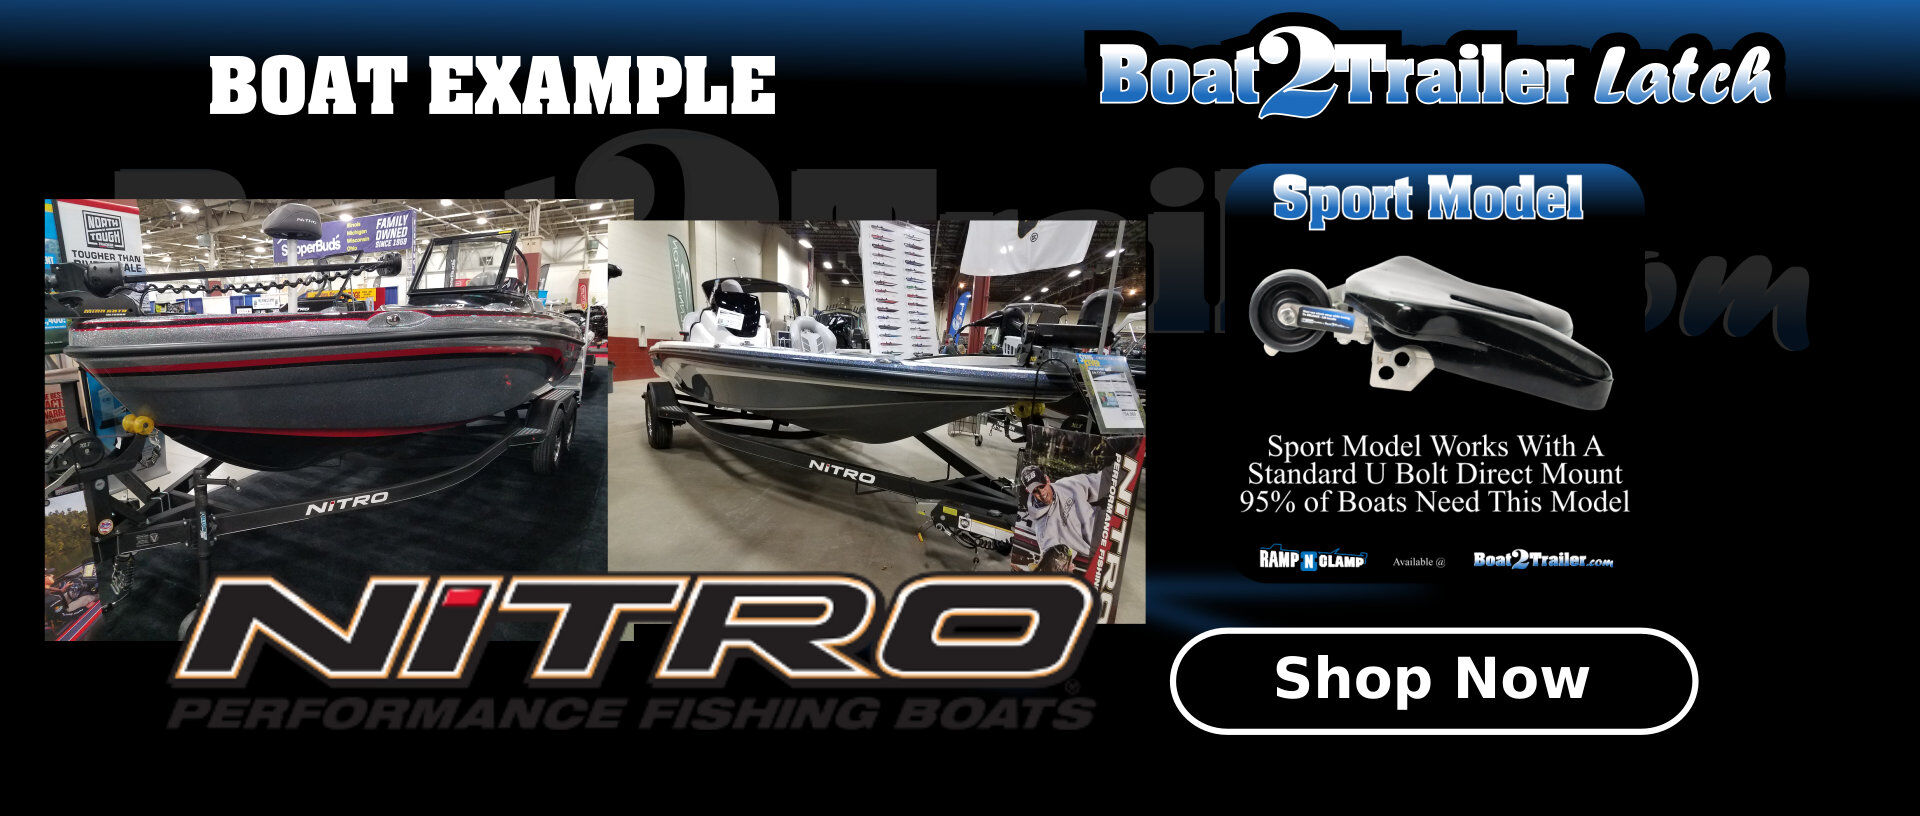 Nitro Automatic Boat Latch